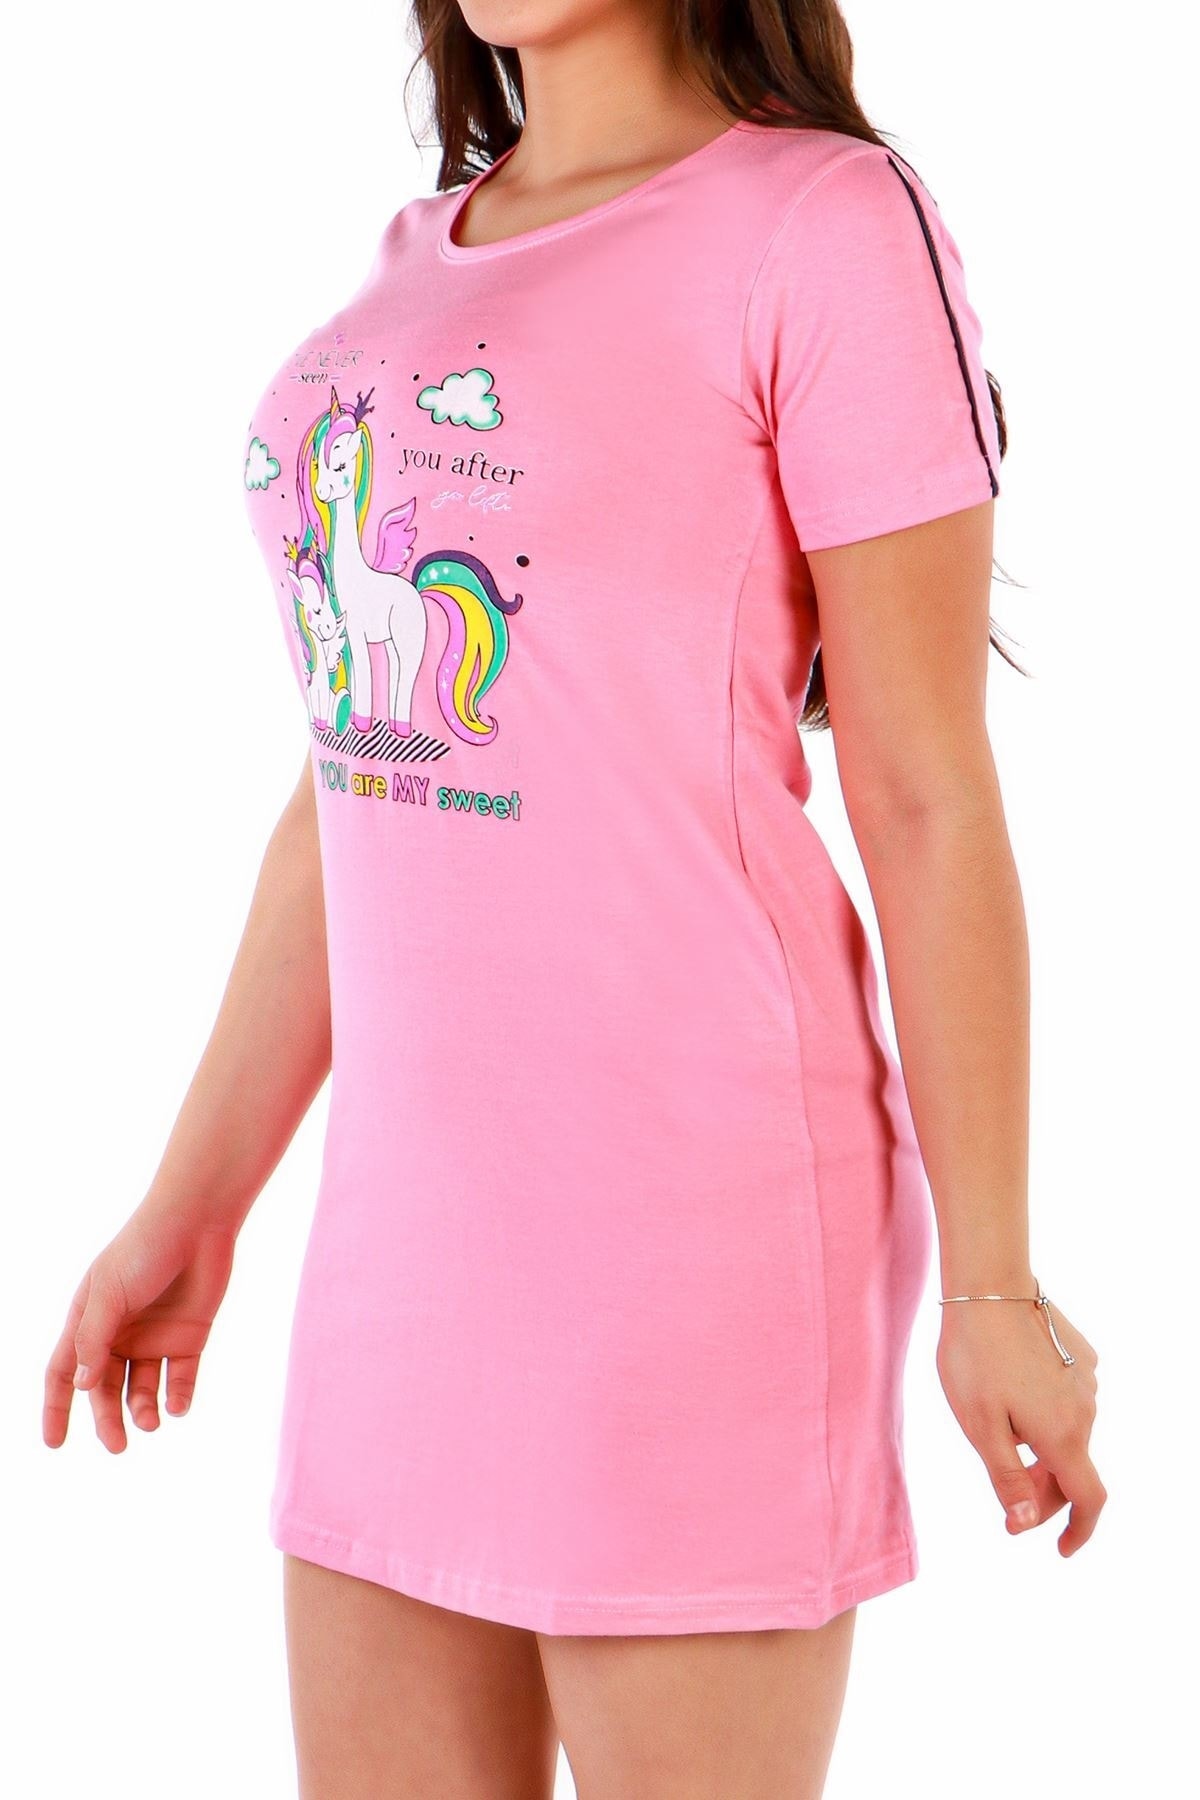 Женская туника, ночная рубашка с воротником и коротким рукавом, вискоза, розовая Nicoletta, розовый ночная рубашка marie с коротким рукавом disney розовый